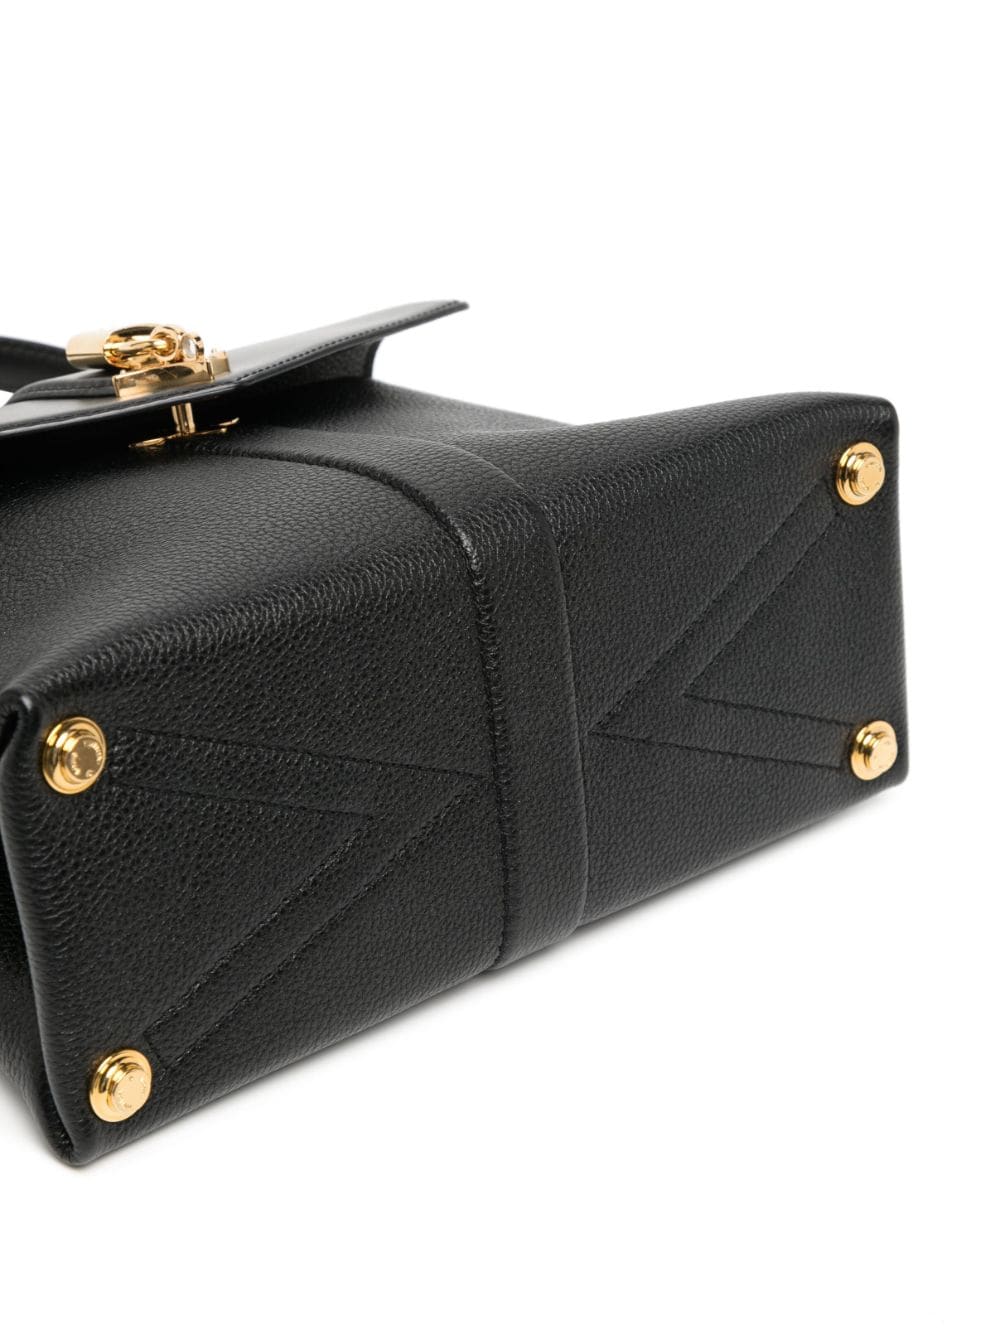 Louis Vuitton 2019 Pre-owned Rose des Vents PM Tote Bag - Black